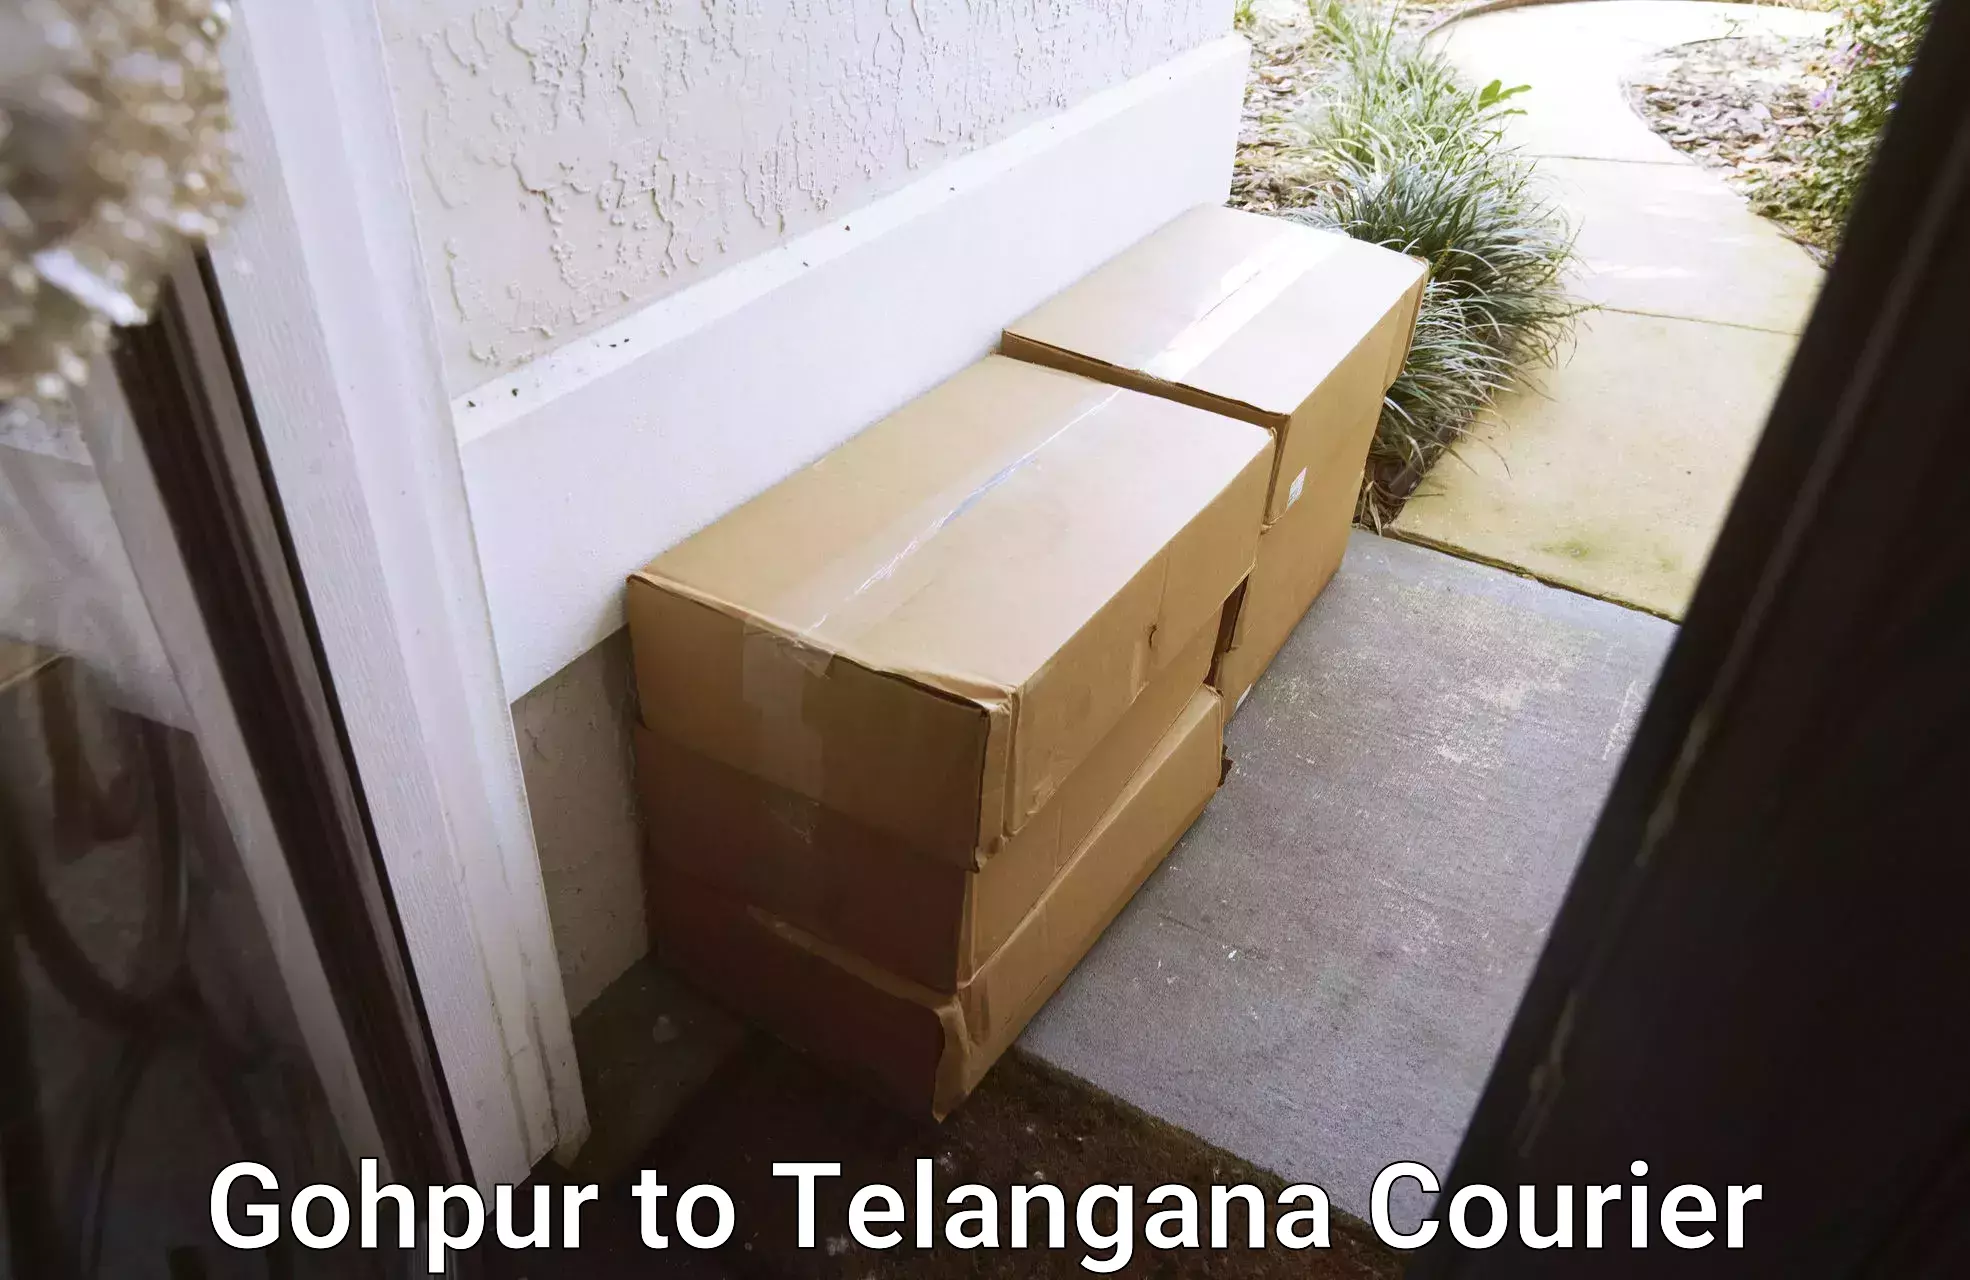 Express courier facilities Gohpur to Telangana